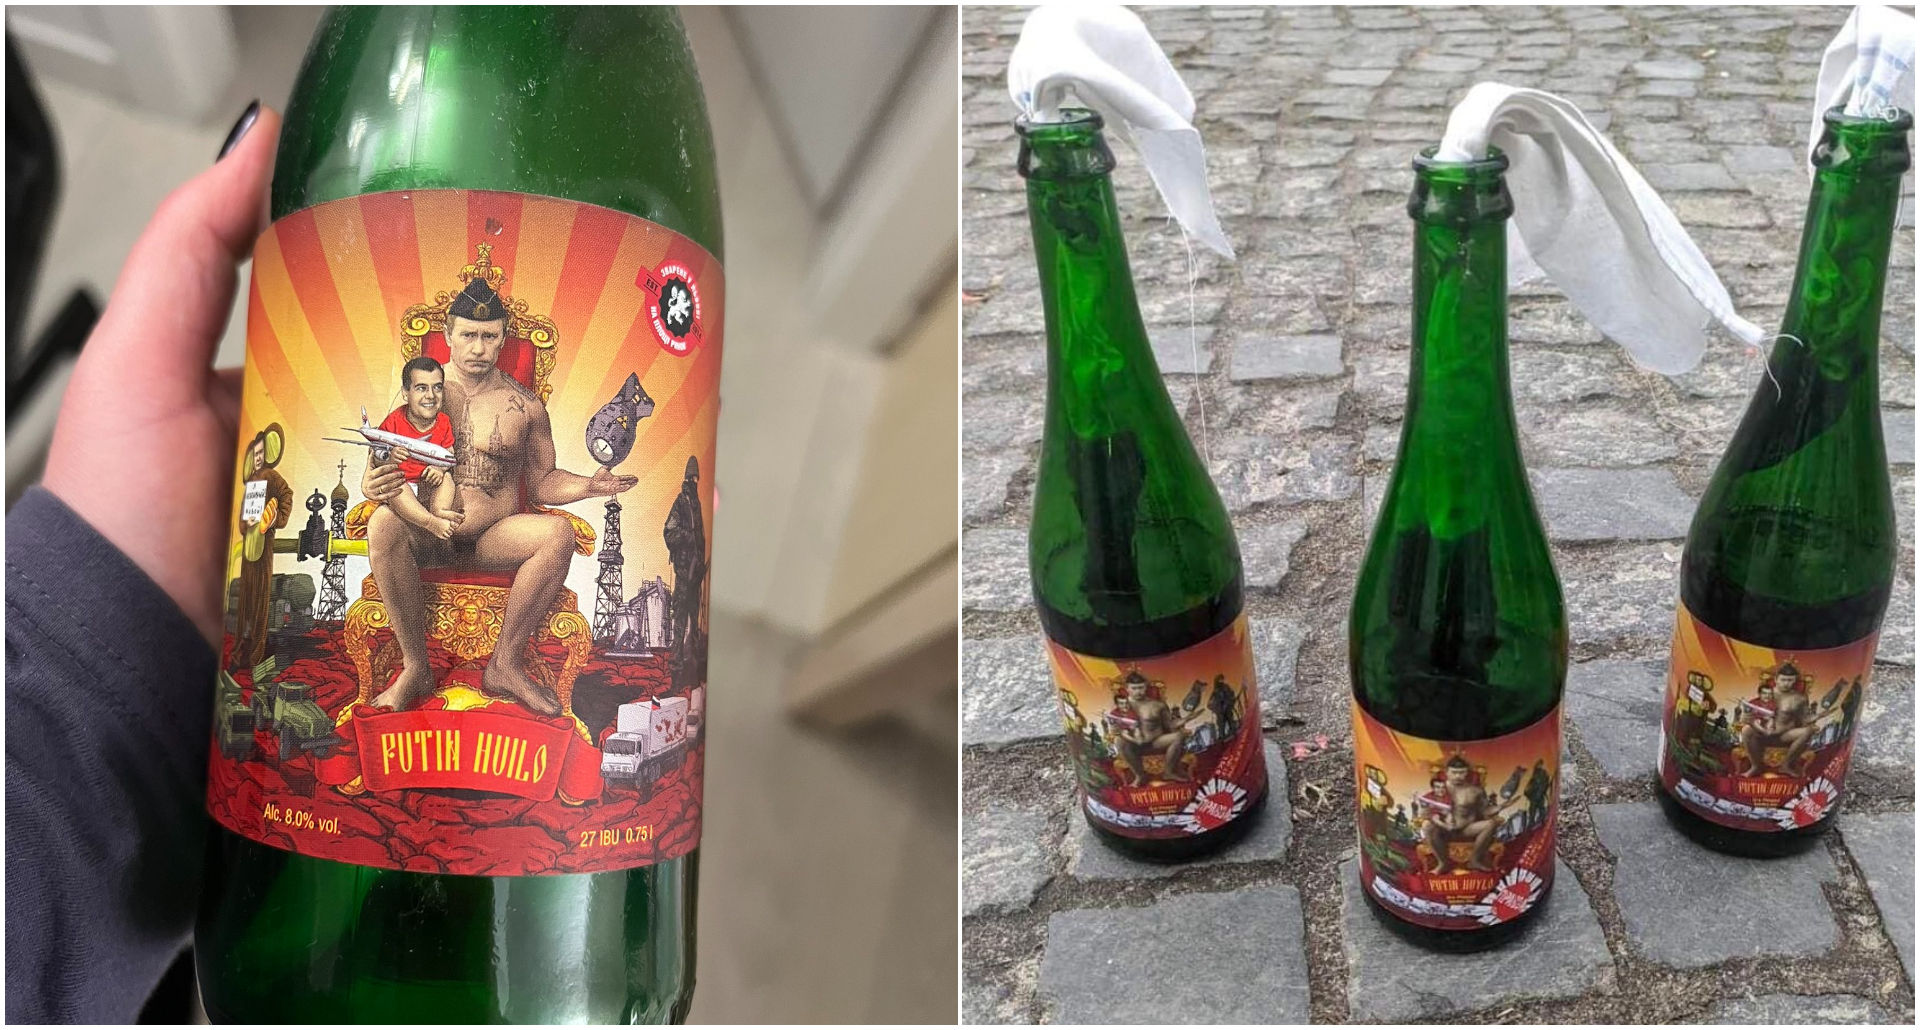 乌克兰酒厂改制汽油弹 瓶身标签印普汀是白痴